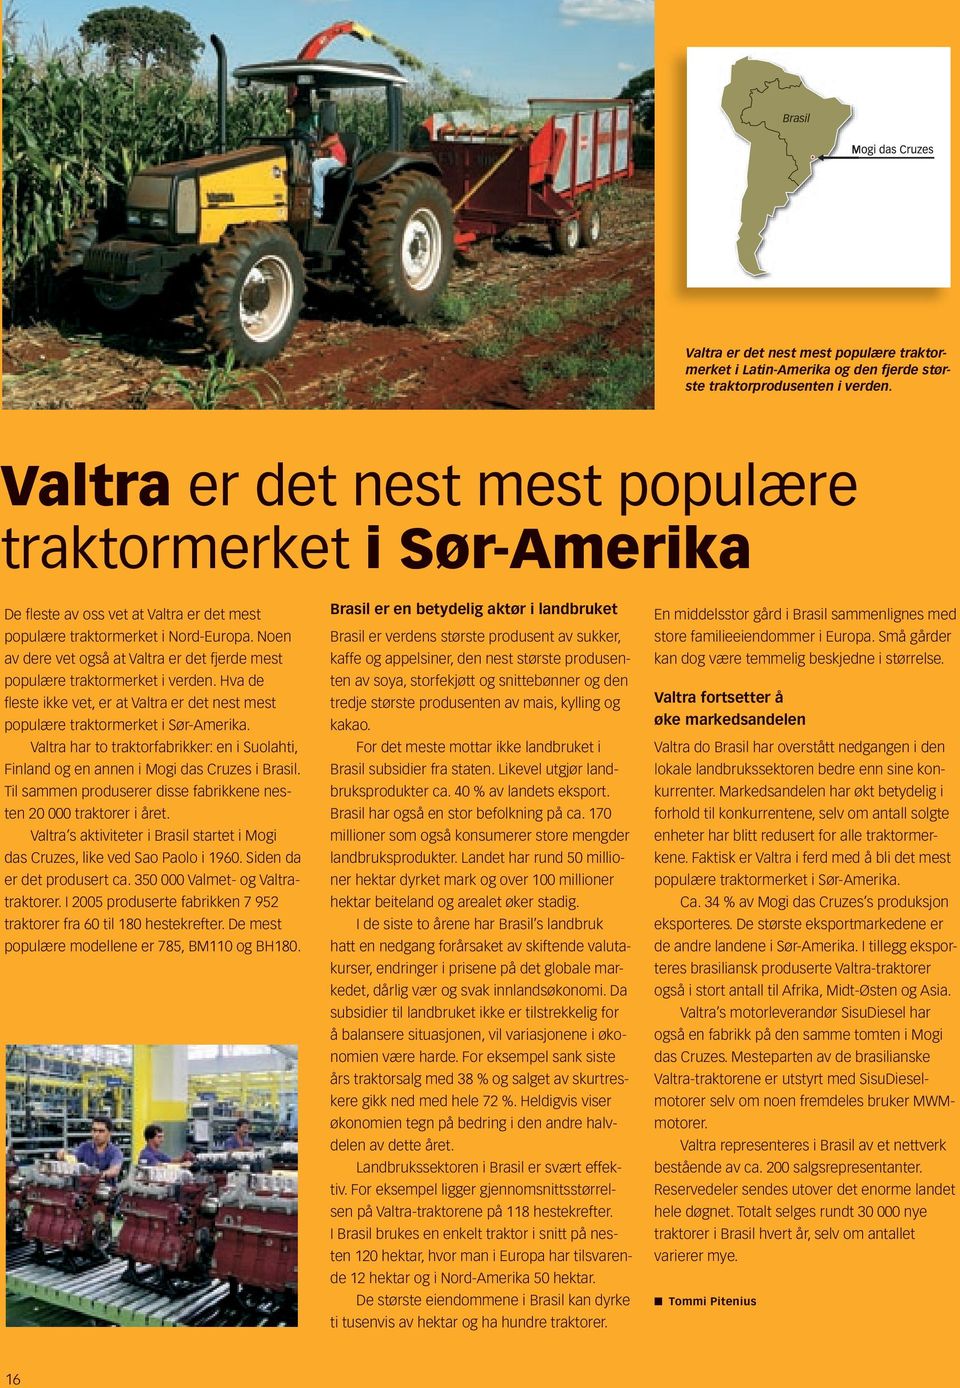 Noen av dere vet også at Valtra er det fjerde mest populære traktormerket i verden. Hva de fl este ikke vet, er at Valtra er det nest mest populære traktormerket i Sør-Amerika.